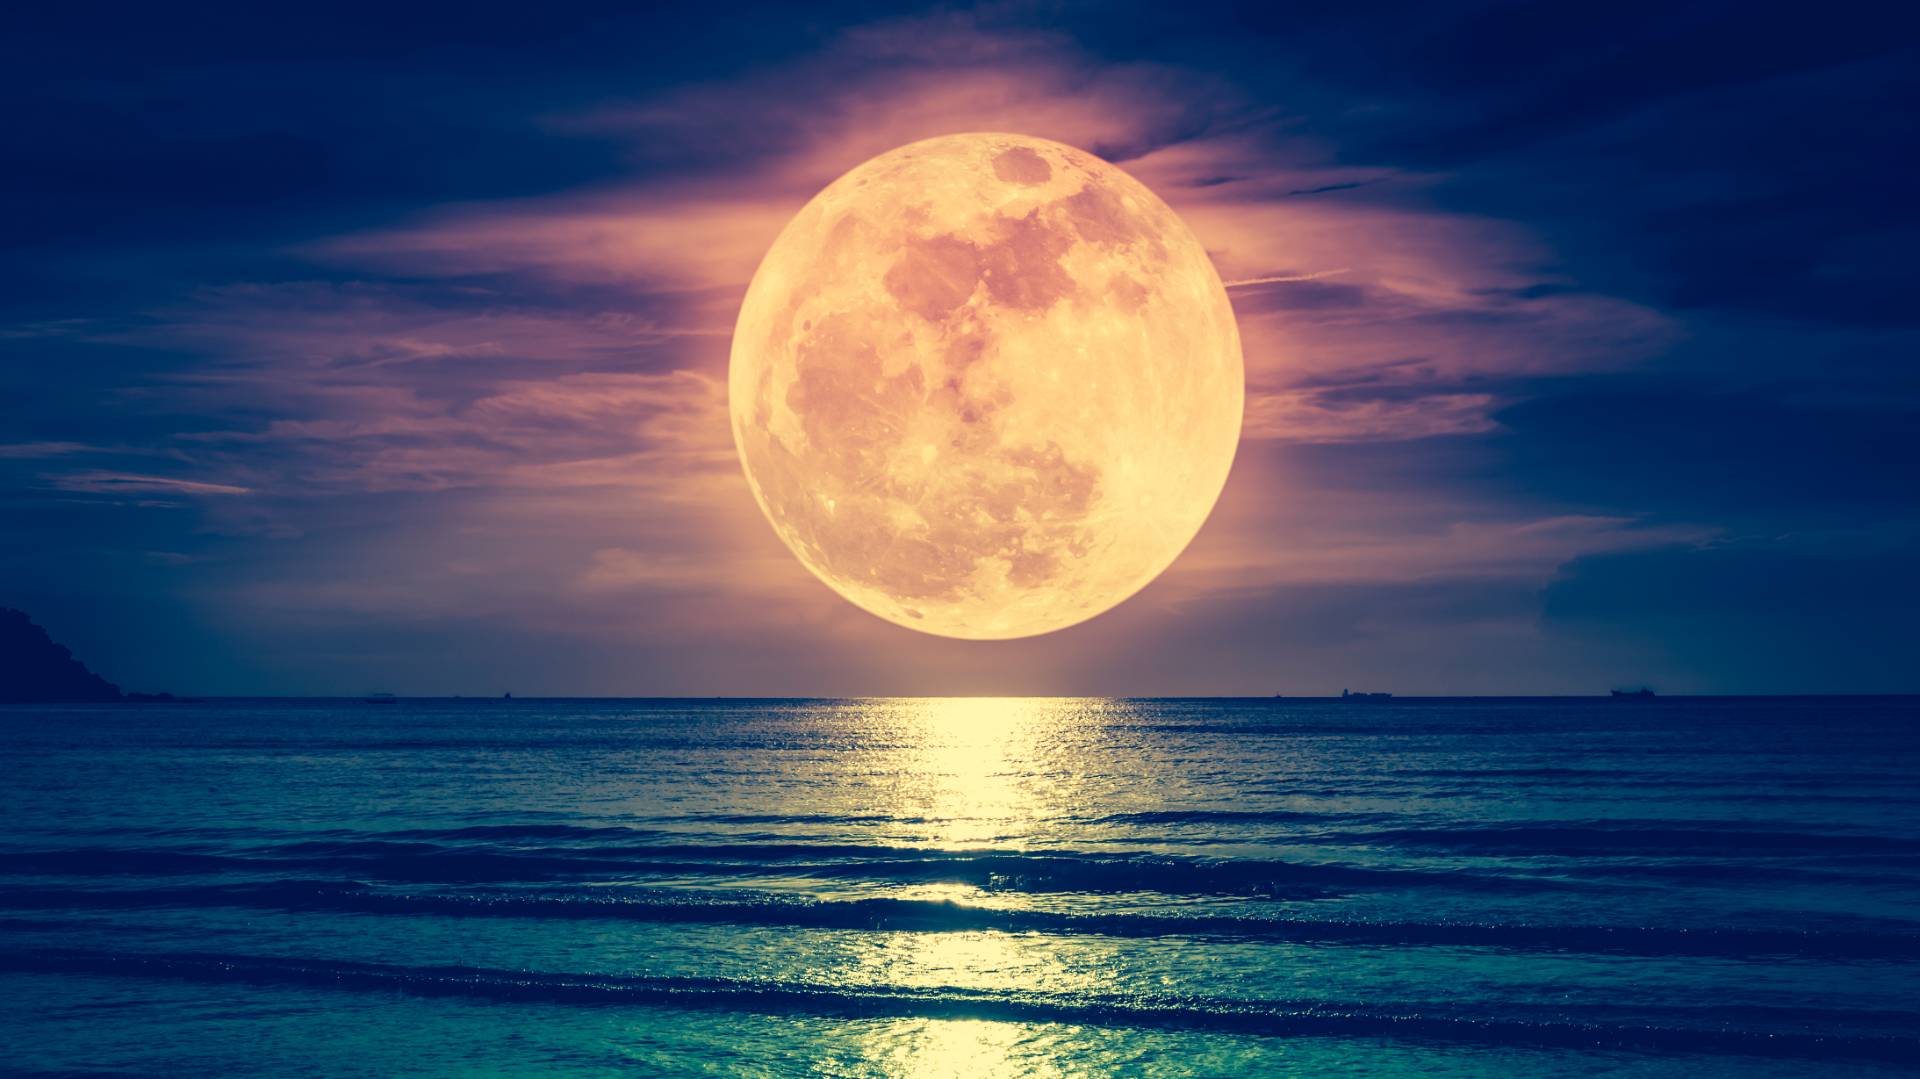 "Охотничья" Луна 9 октября: Что в полнолуние нужно сделать обязательно, а чего точно не стоит